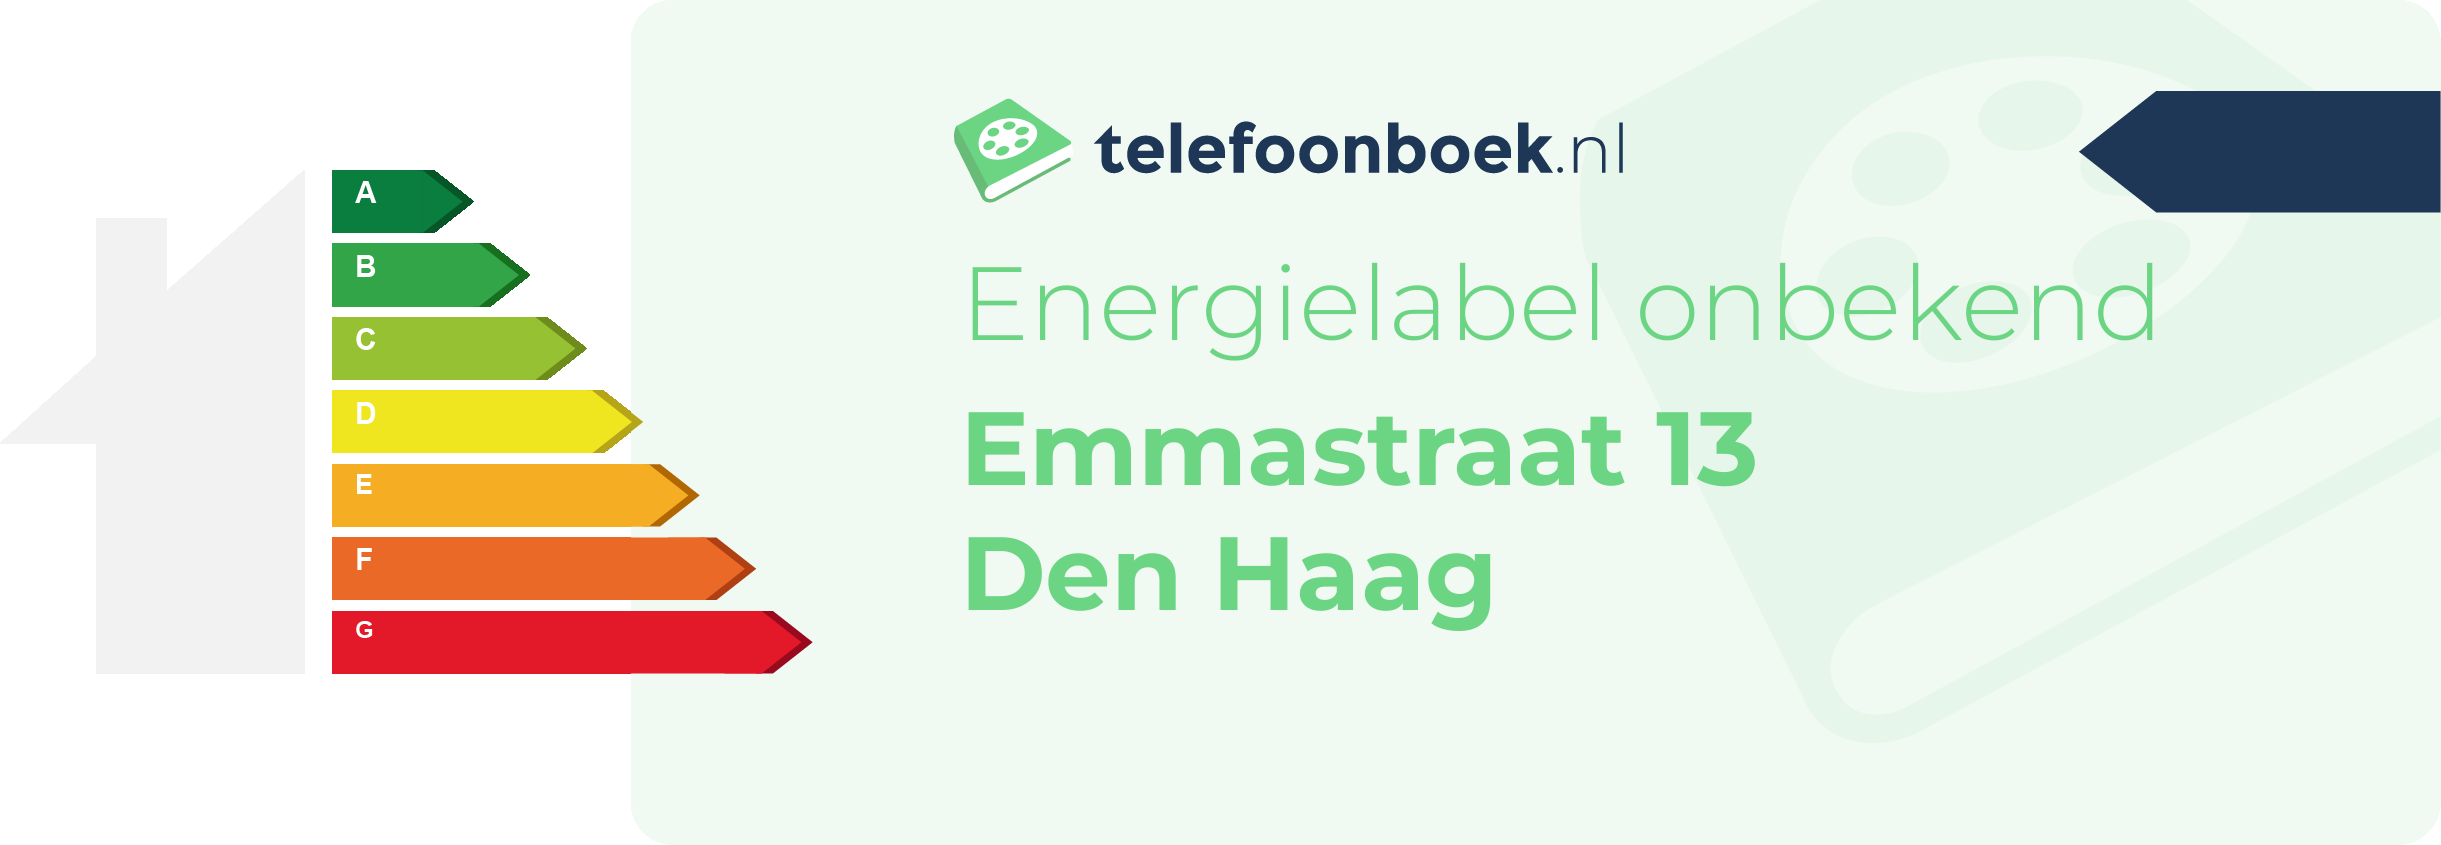 Energielabel Emmastraat 13 Den Haag